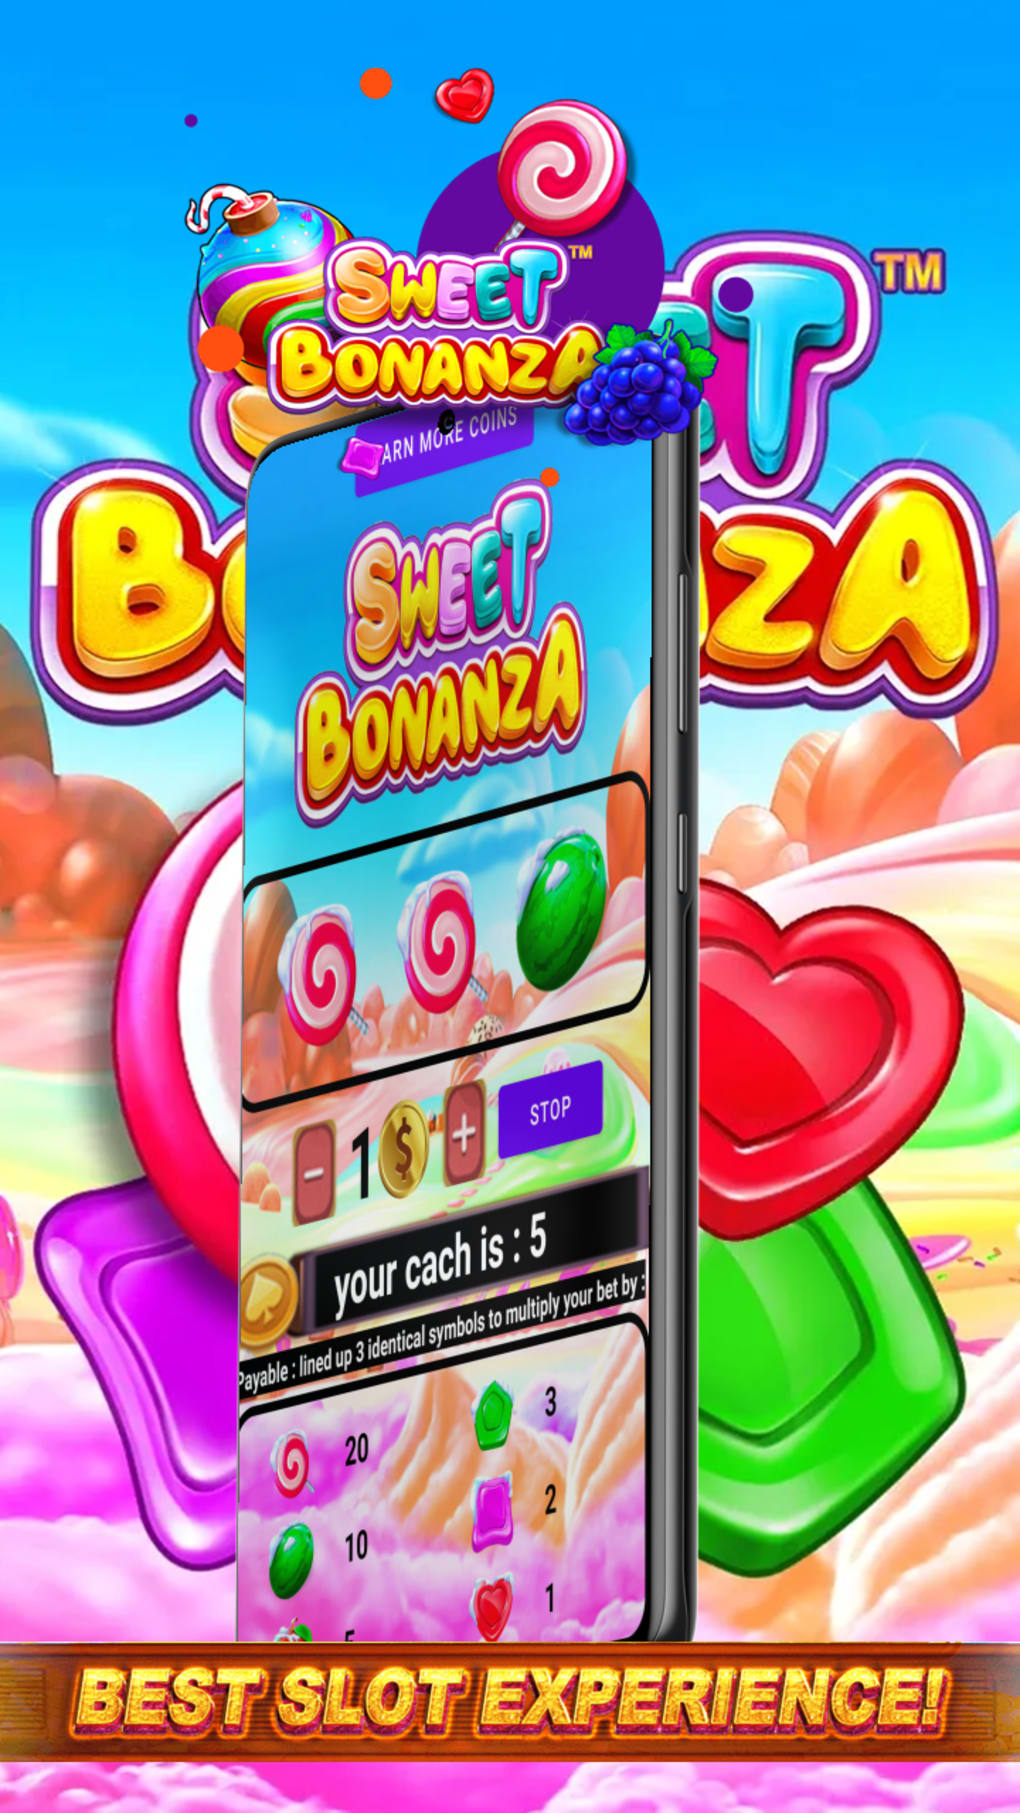 Abra os portões para jogo sweet bonanza  usando essas dicas simples